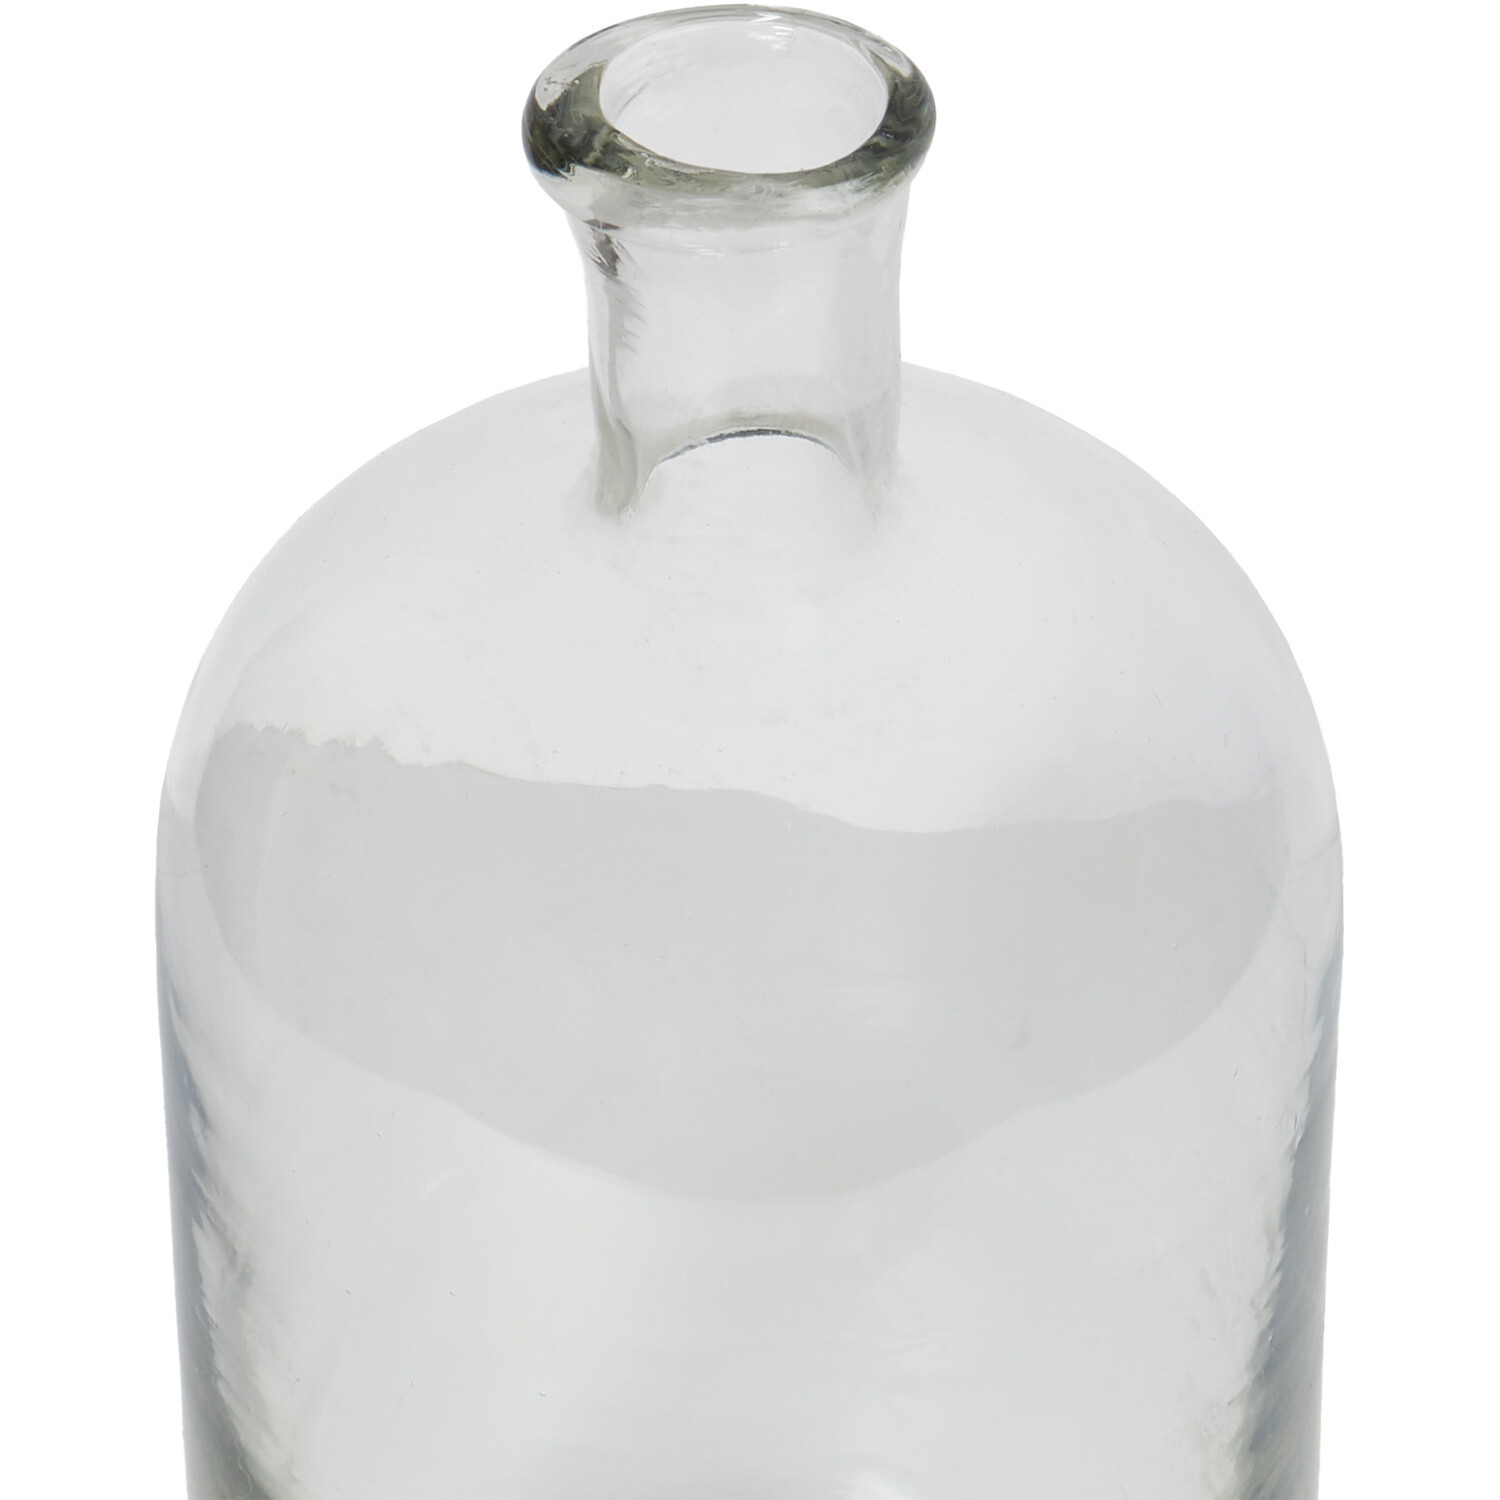 Bottleneck Glass Vase - Clear Image 3